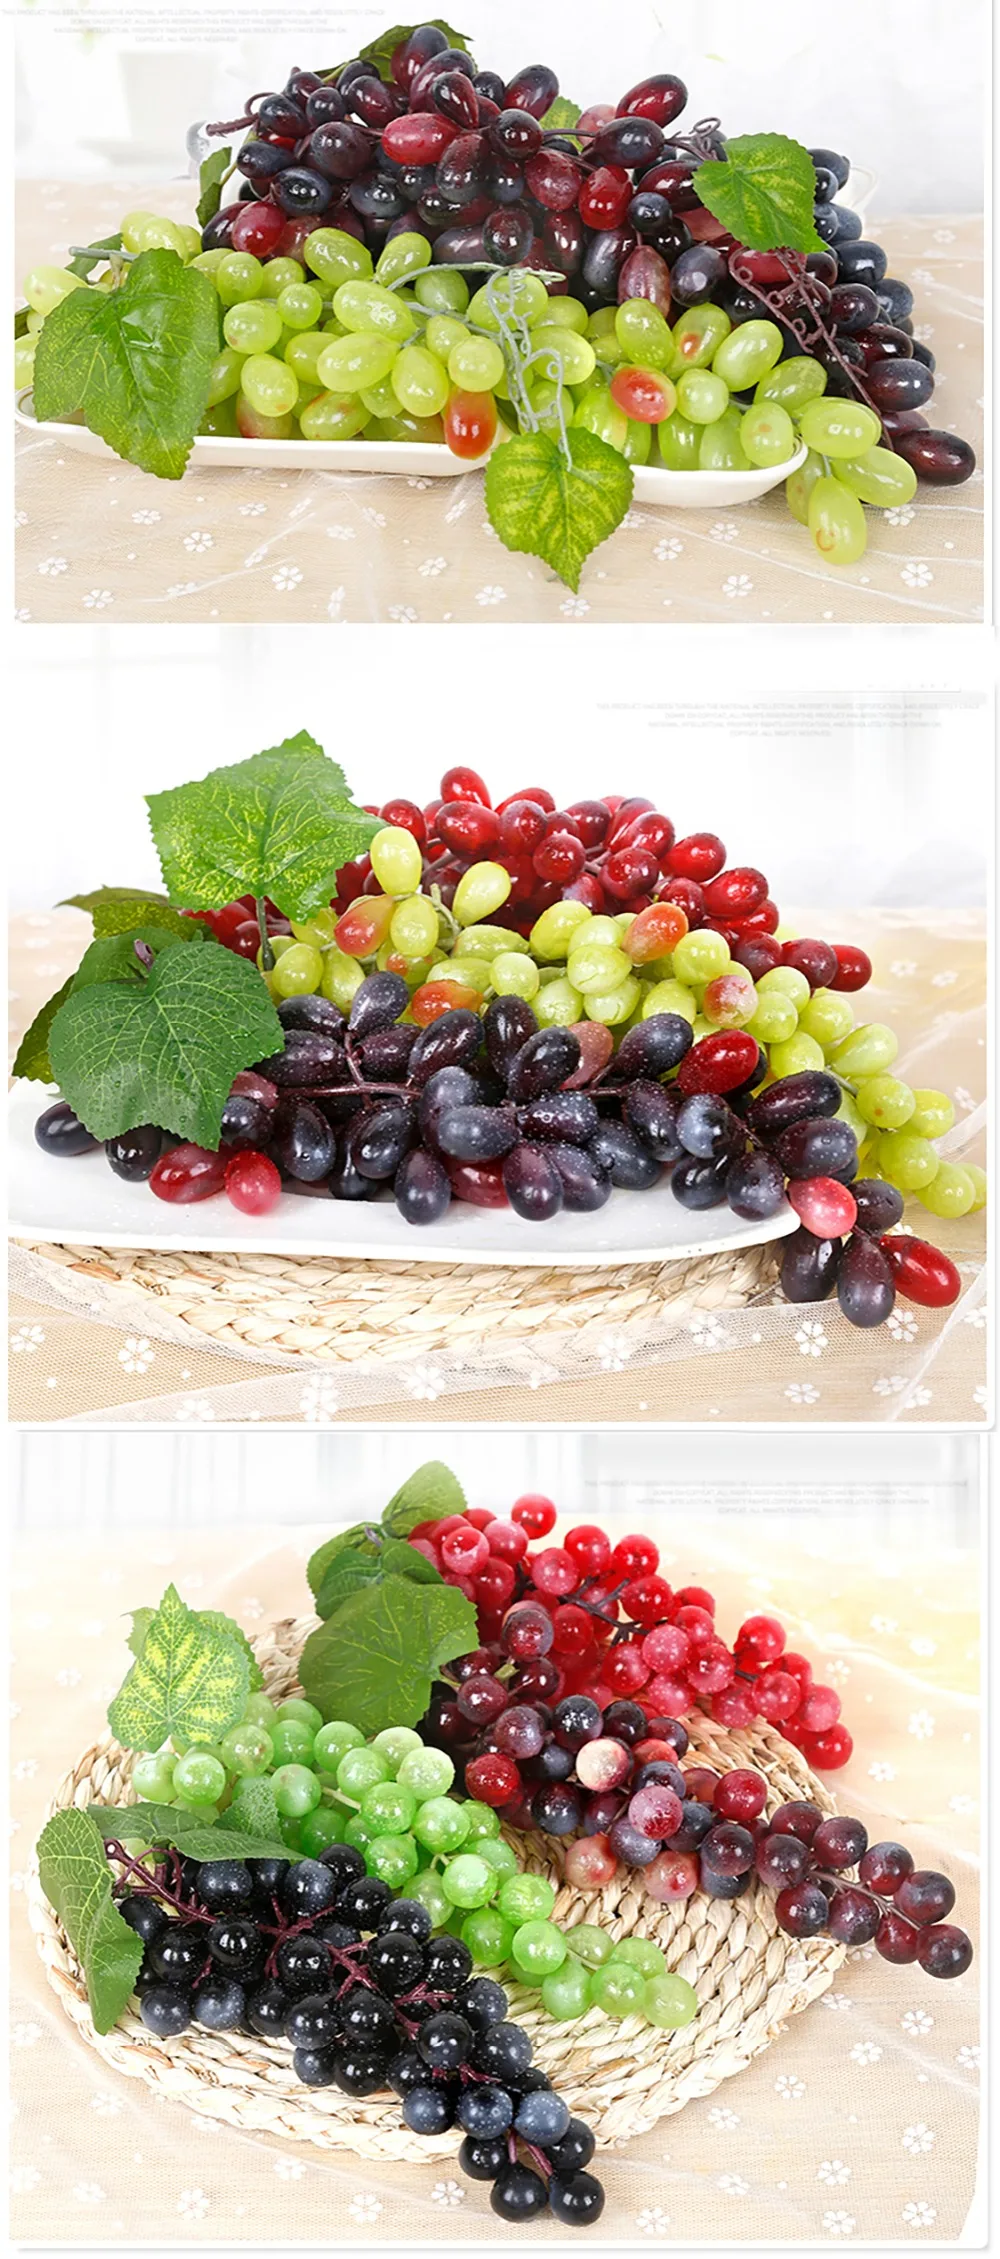 1X домашнее декоративное растение кулон искусственный пластик фрукты гроздь винограда зеленый поддельные искусственные фрукты модель реквизит EP пластиковый материал